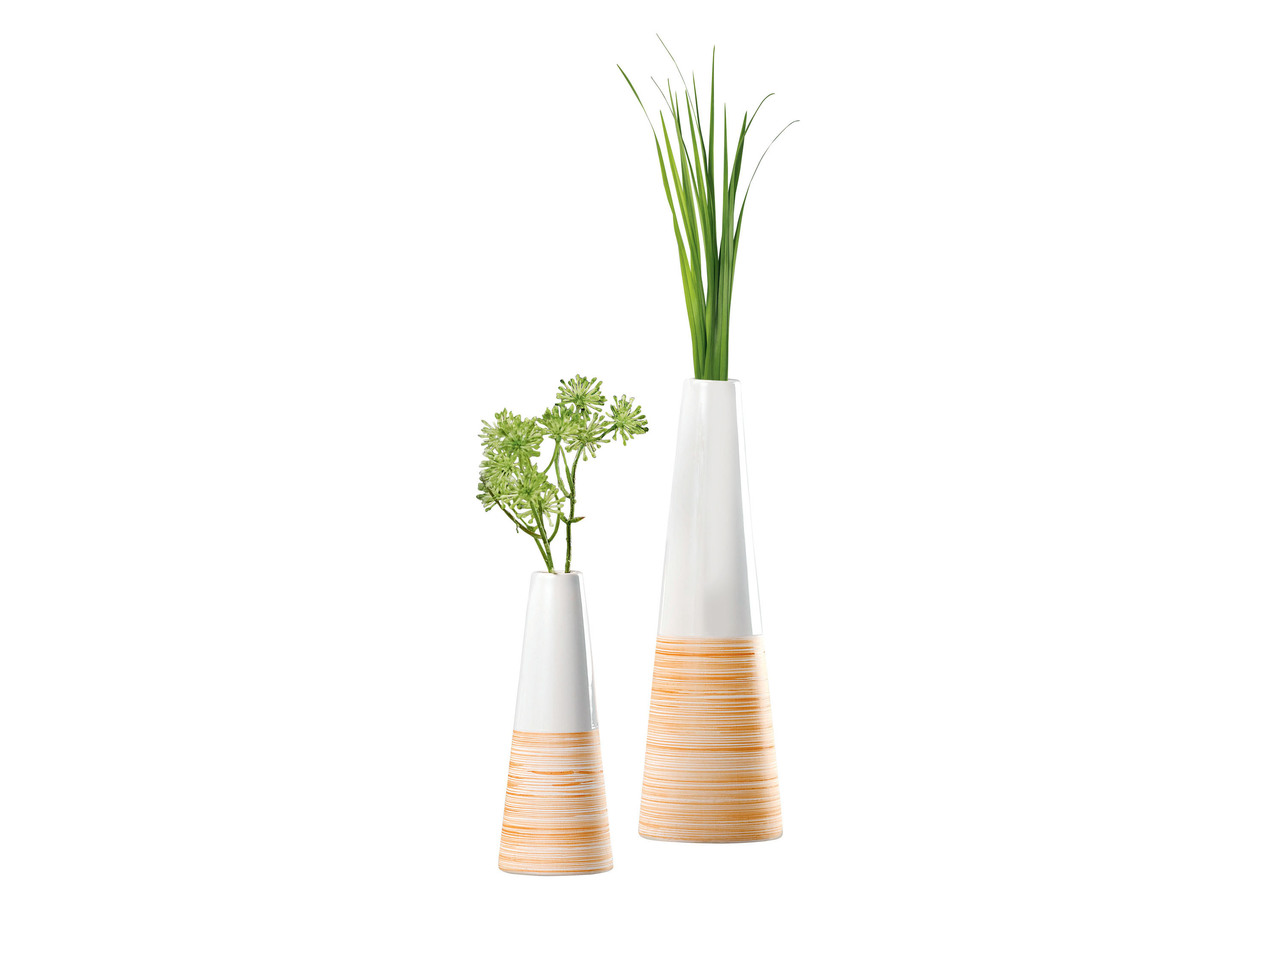 Vase, Vase Set or Ceramic Box